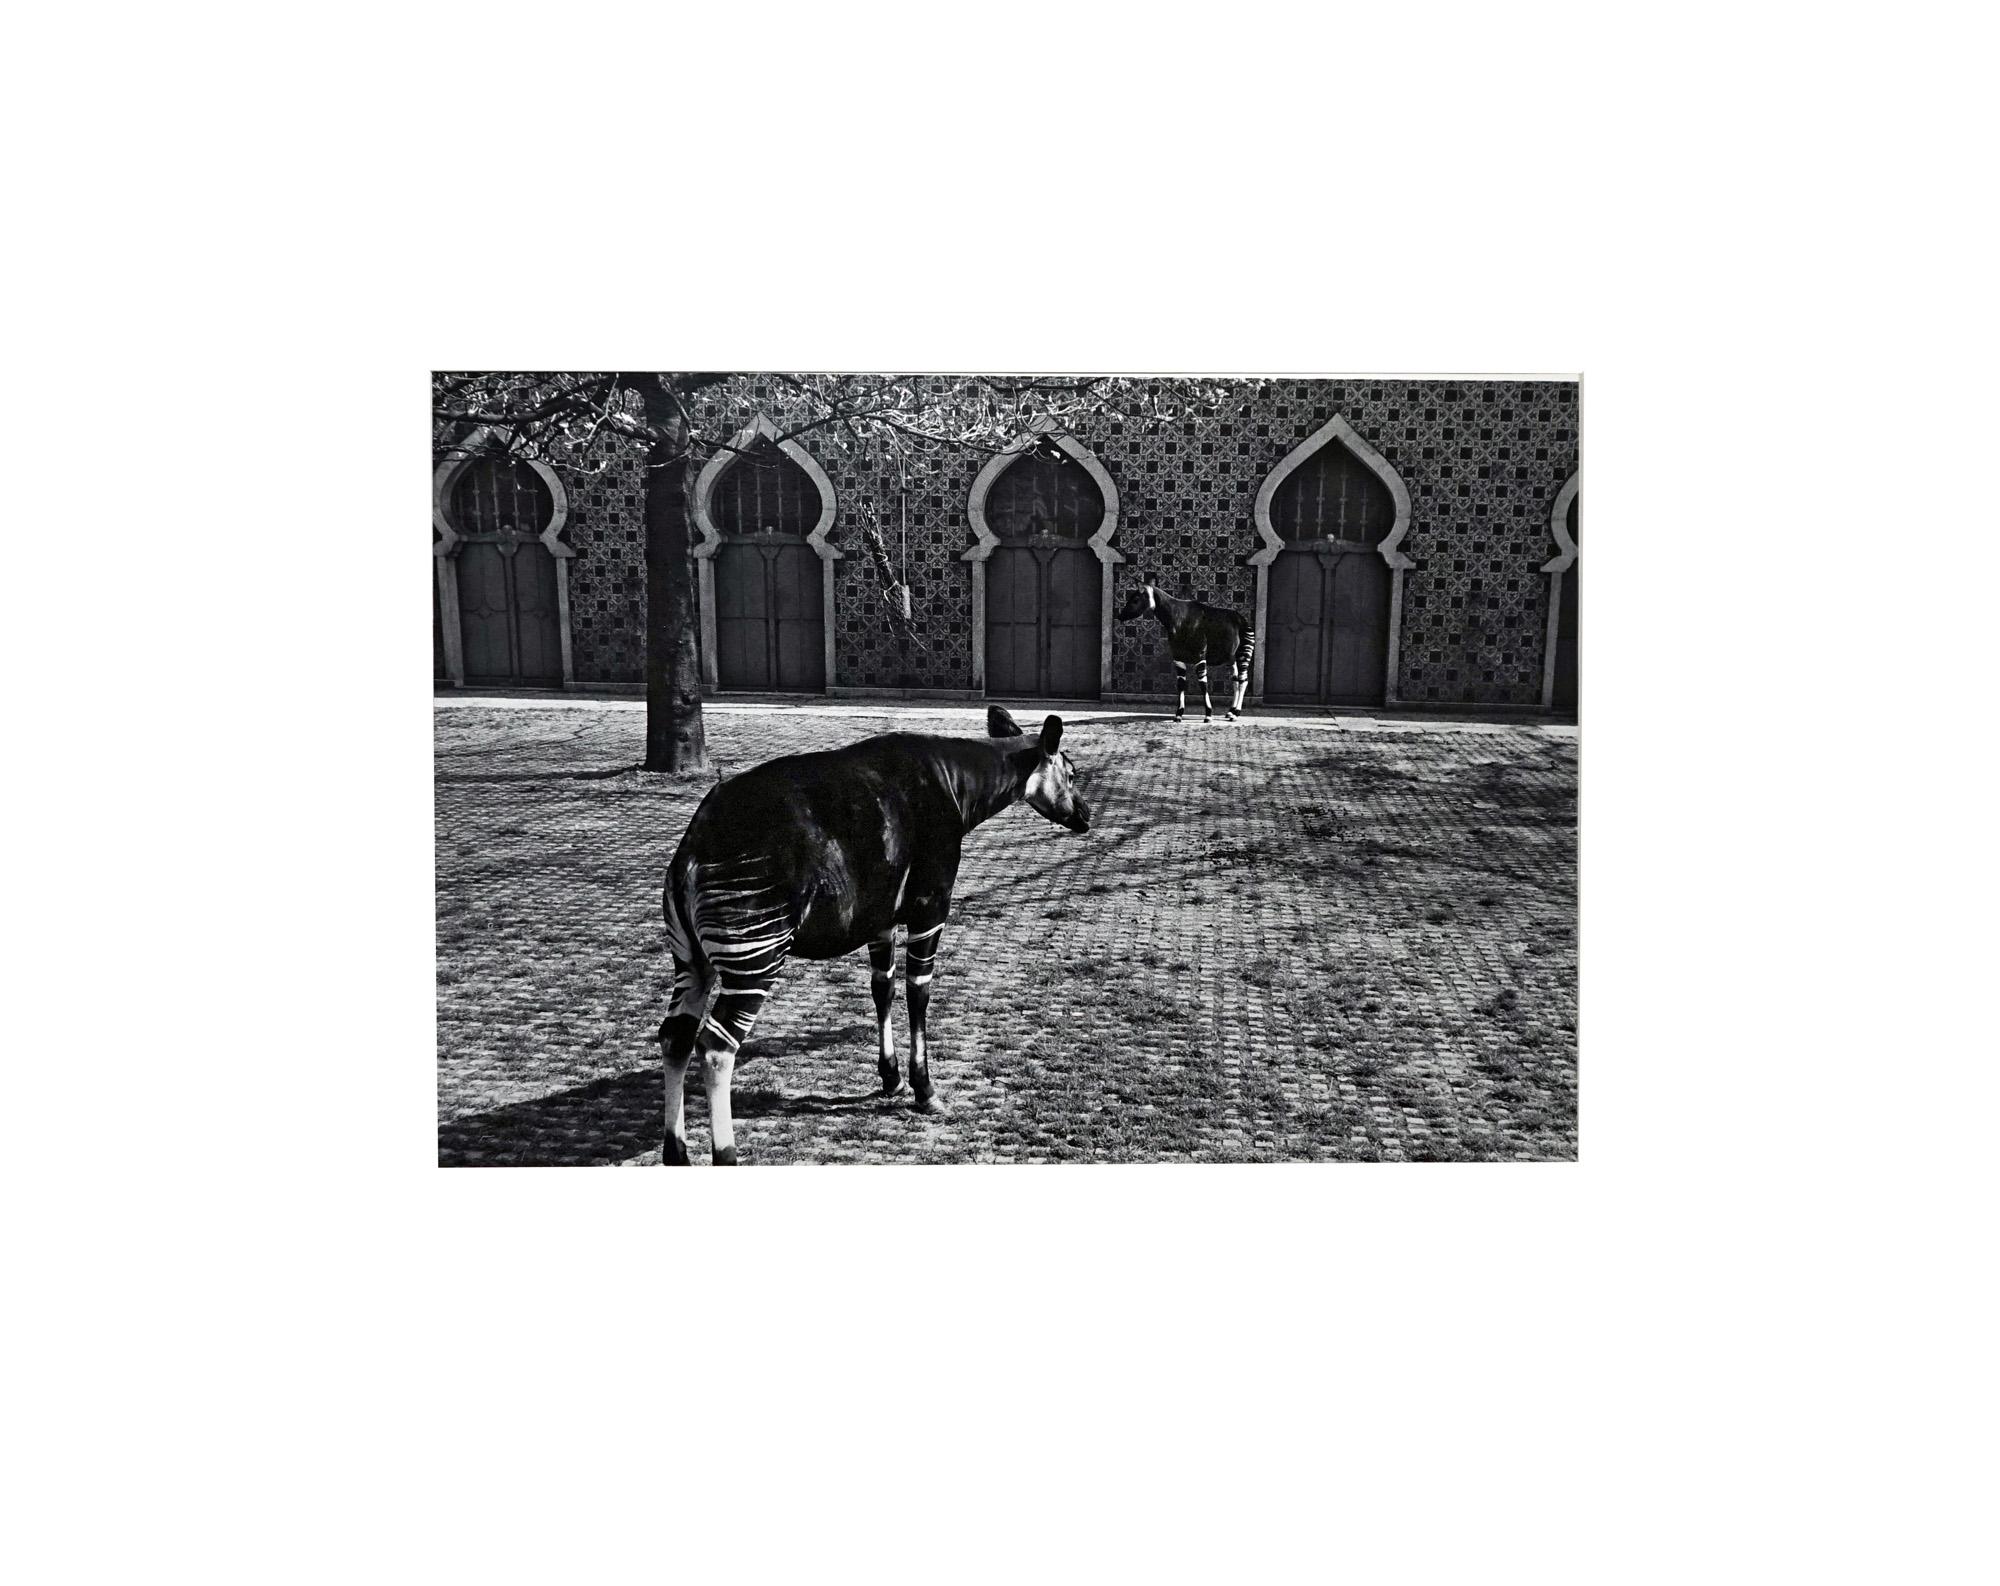 Parc Zoologique - Coffret Prestige # 3 - 1980, Minimalist Black and White Photog - Photograph by Jörg Krichbaum